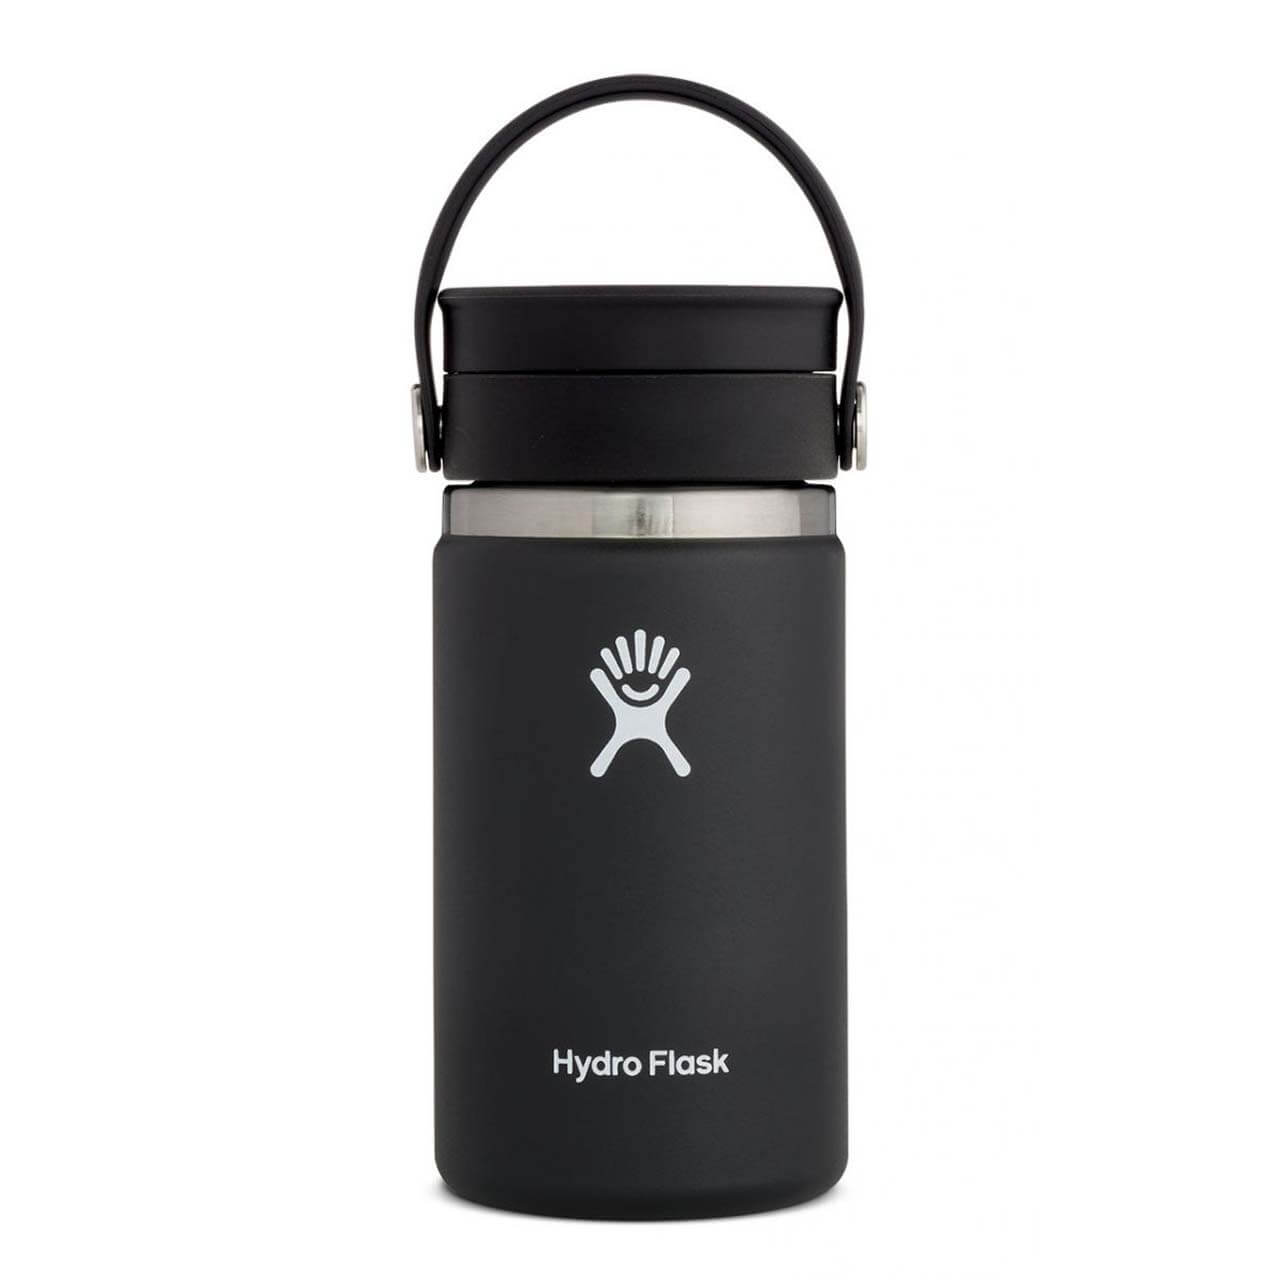 Hydro Flask Kaffeebecher - Black, 12 oz von Hydro Flask}